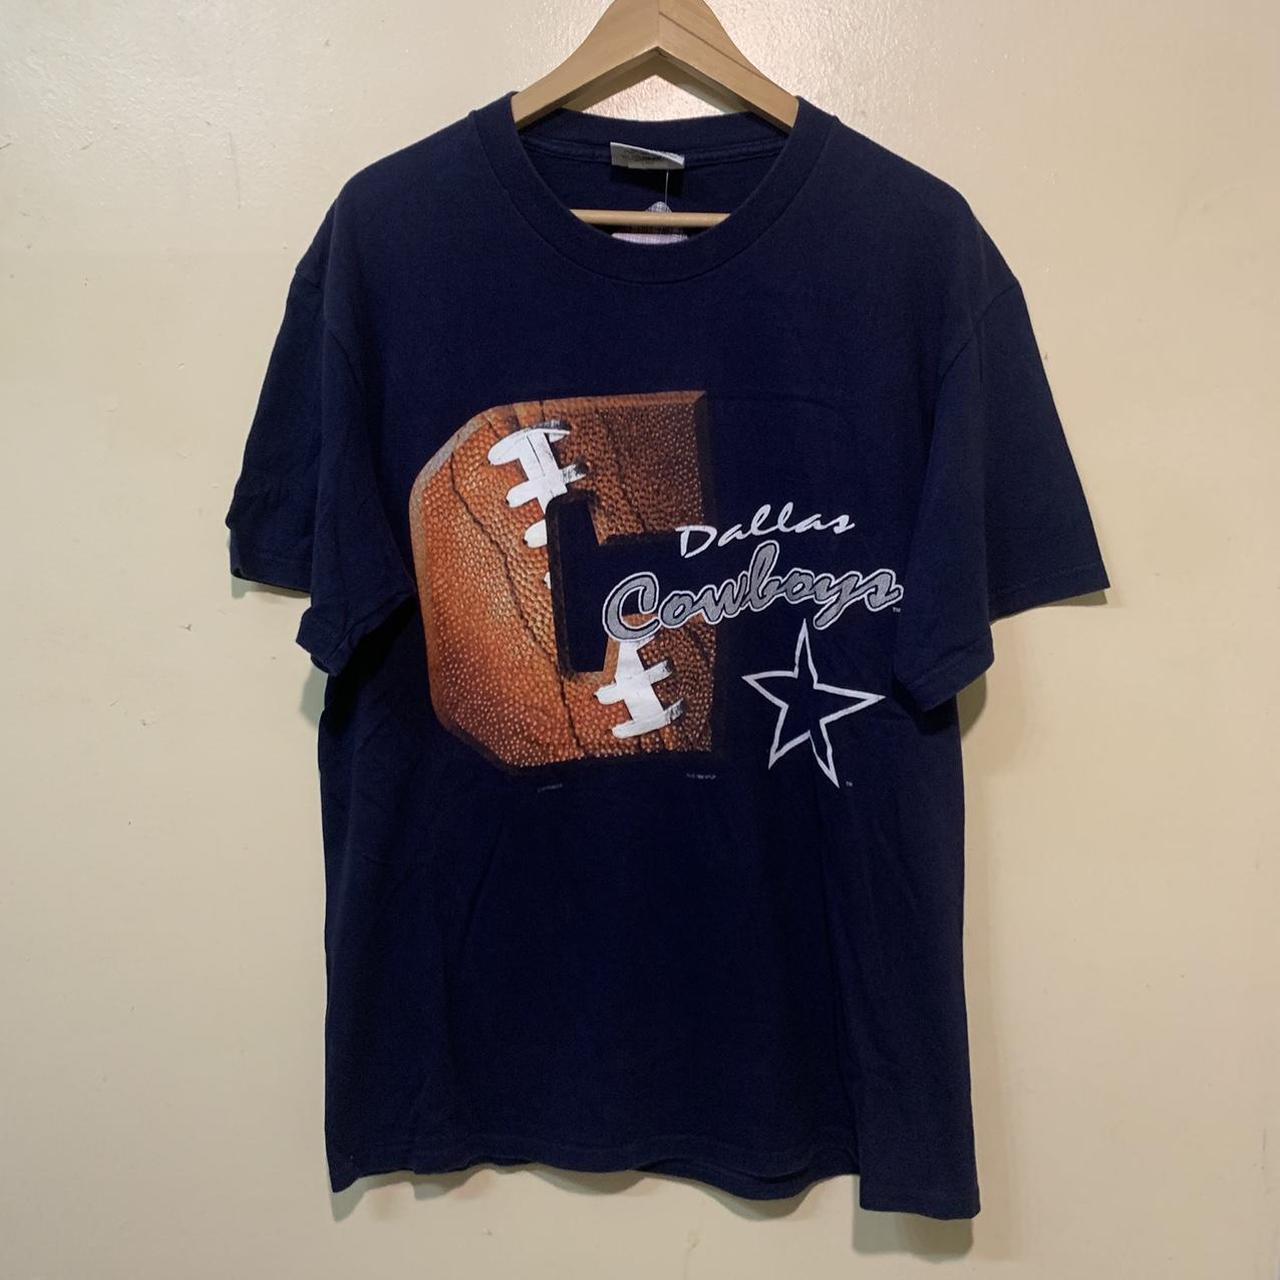 Vintage Dallas Cowboys shirt •Size: Large •No... - Depop